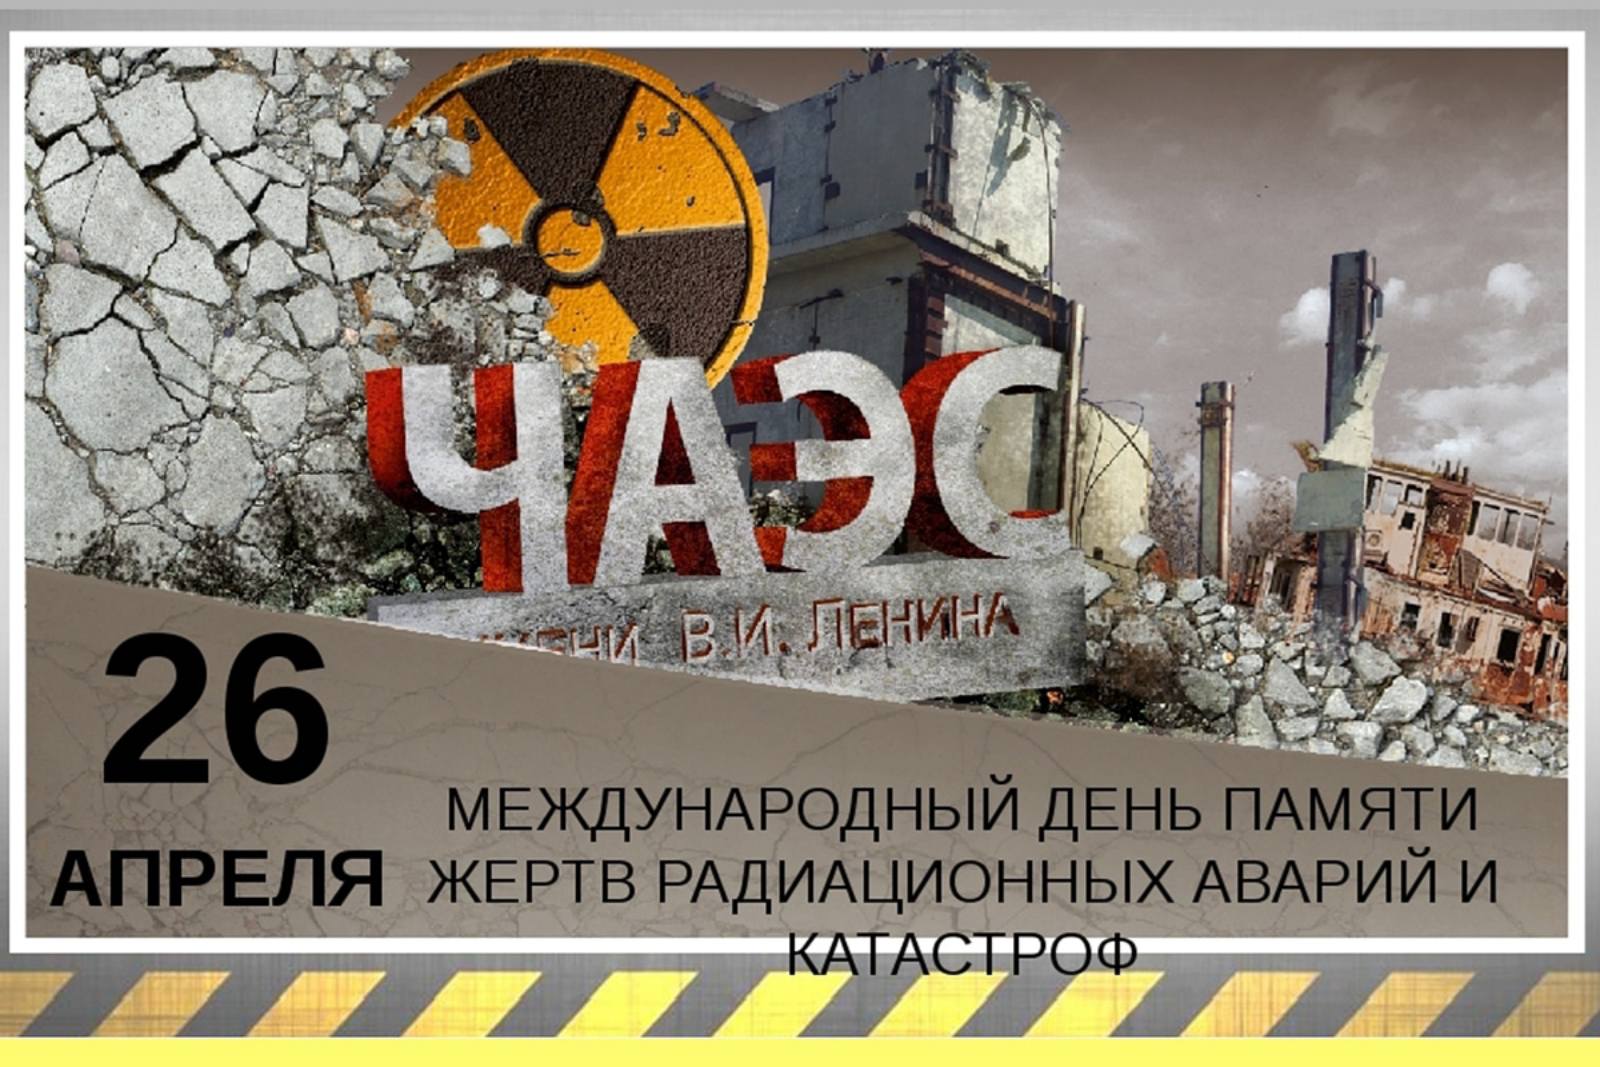 26 апреля день ликвидации. Международный день памяти о Чернобыльской аварии-26 апреля. День памяти ликвидации аварии на ЧАЭС (Чернобыль). 26 Апреля 1986 день памяти погибших в радиационных авариях и катастрофах. 26 Апреля Международный день памяти о Чернобыльской катастрофе.